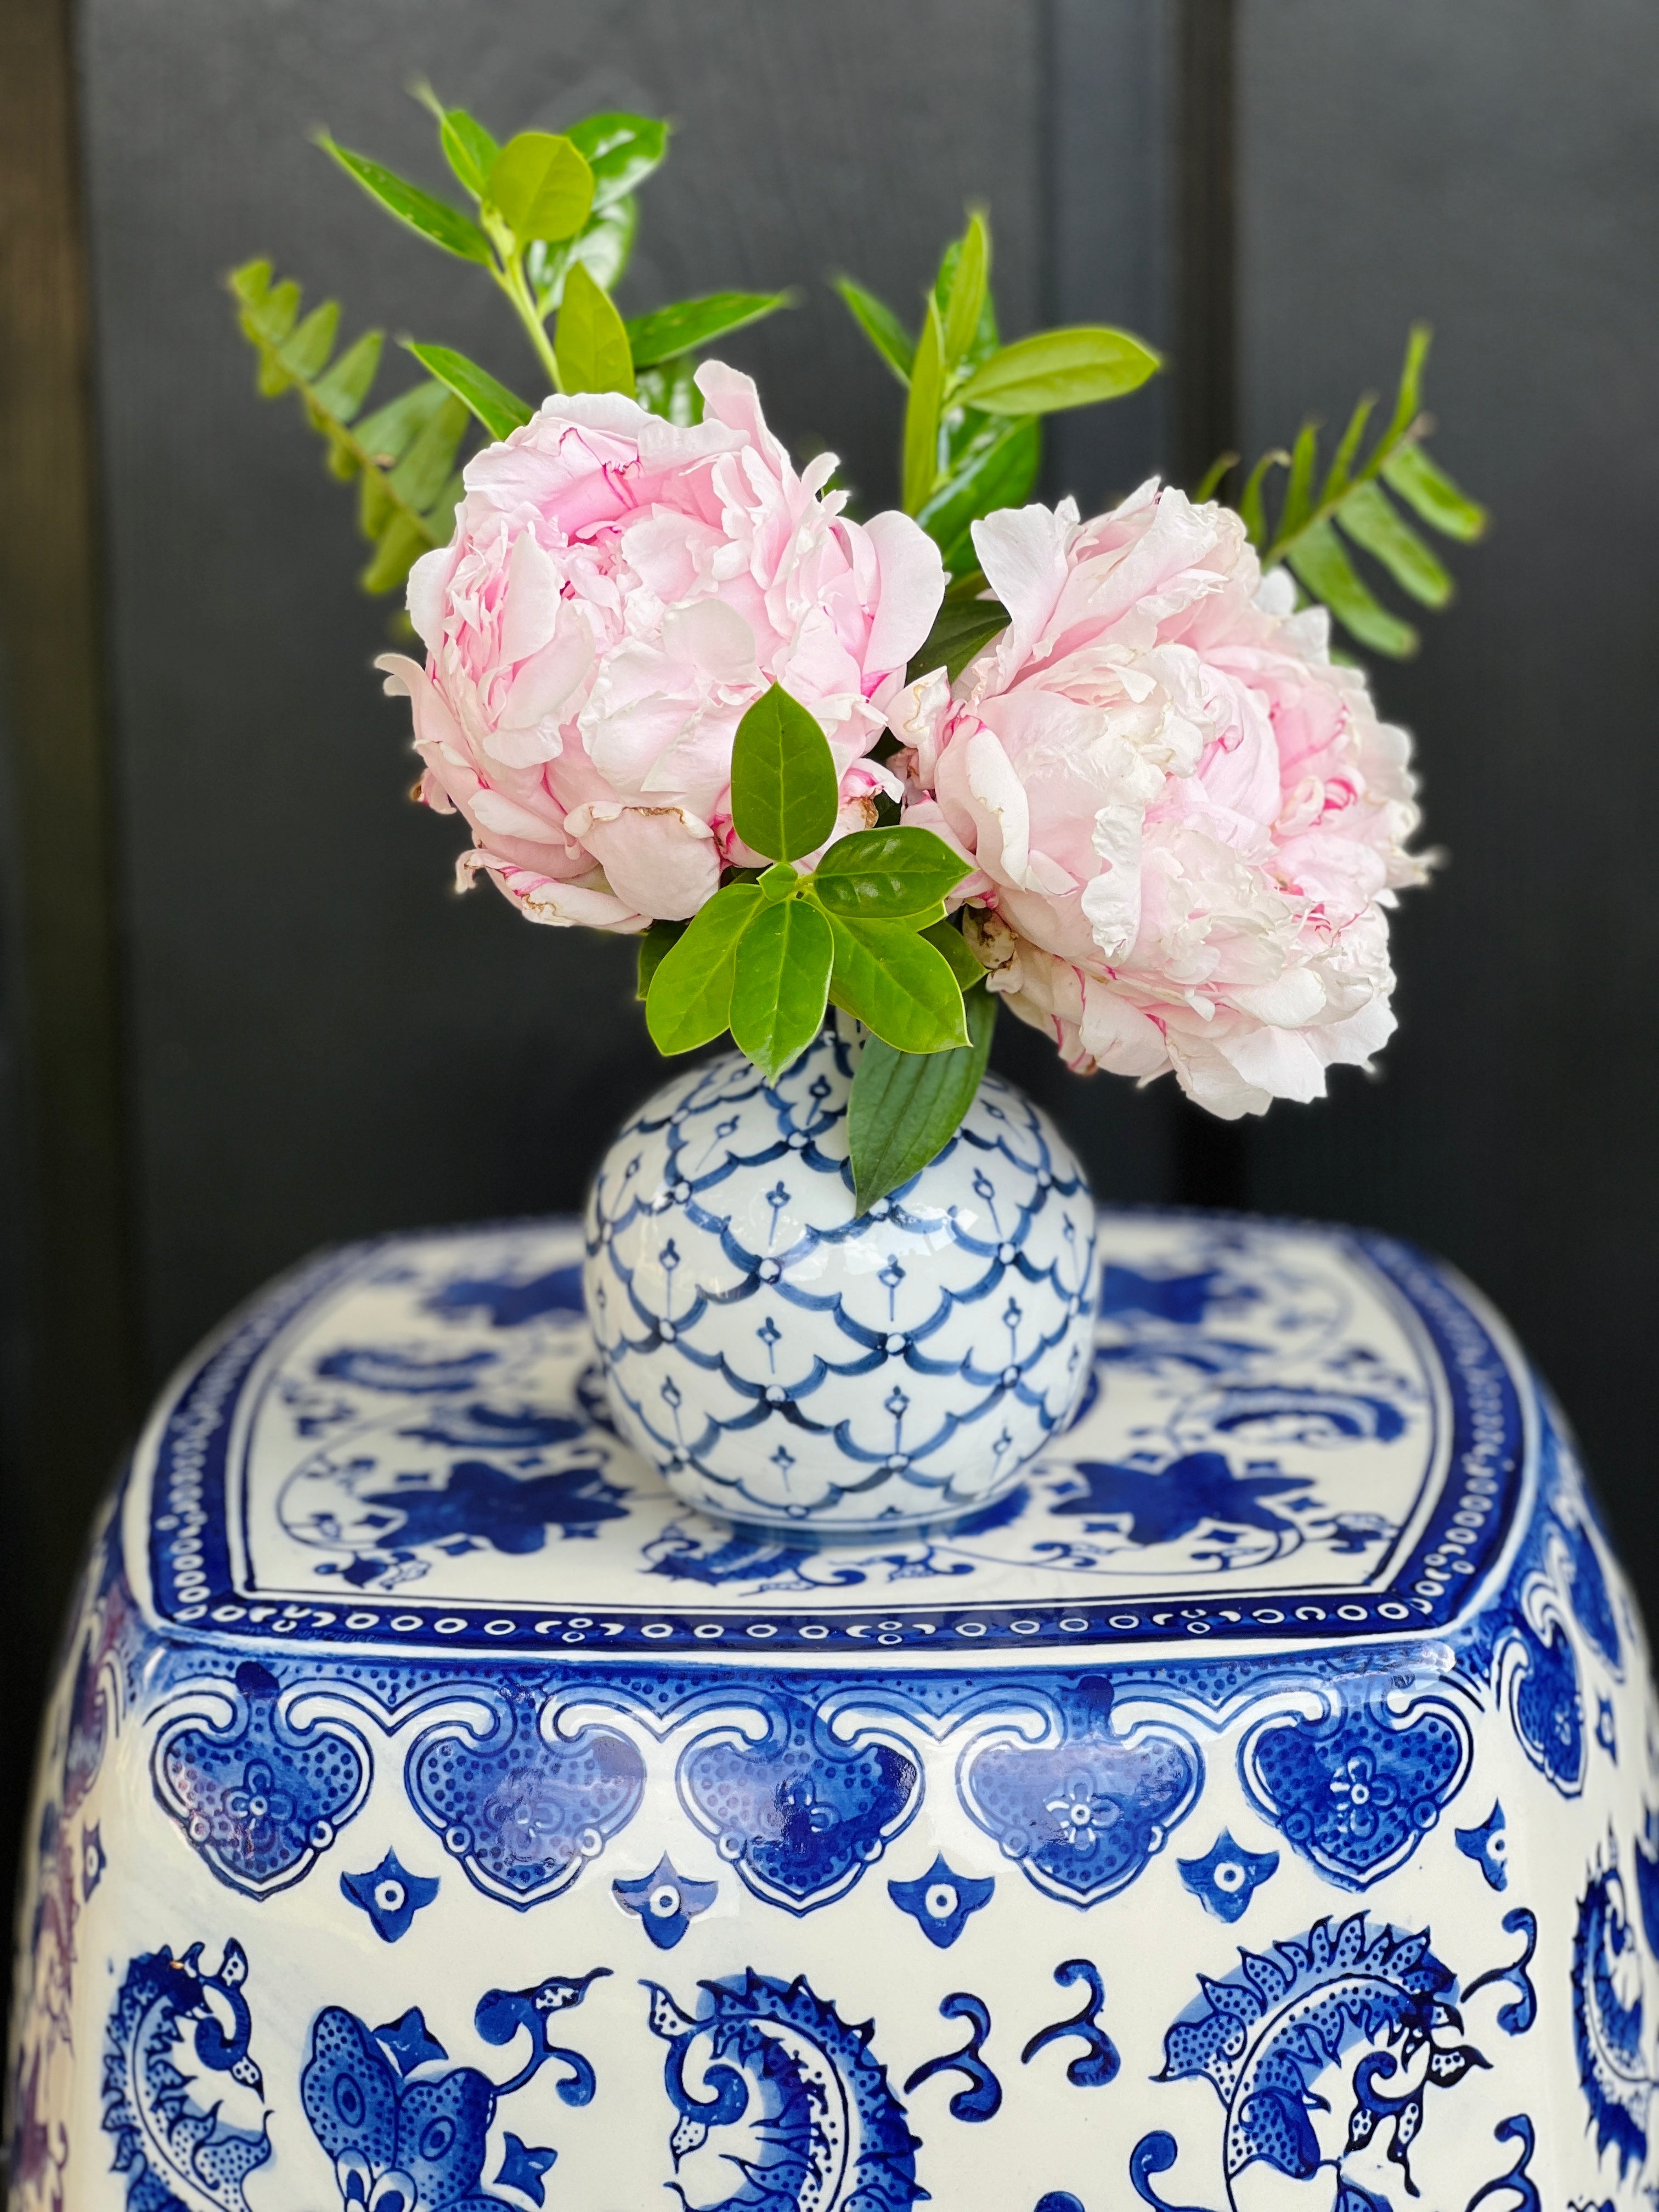 Set of 3 blue and white bud vases